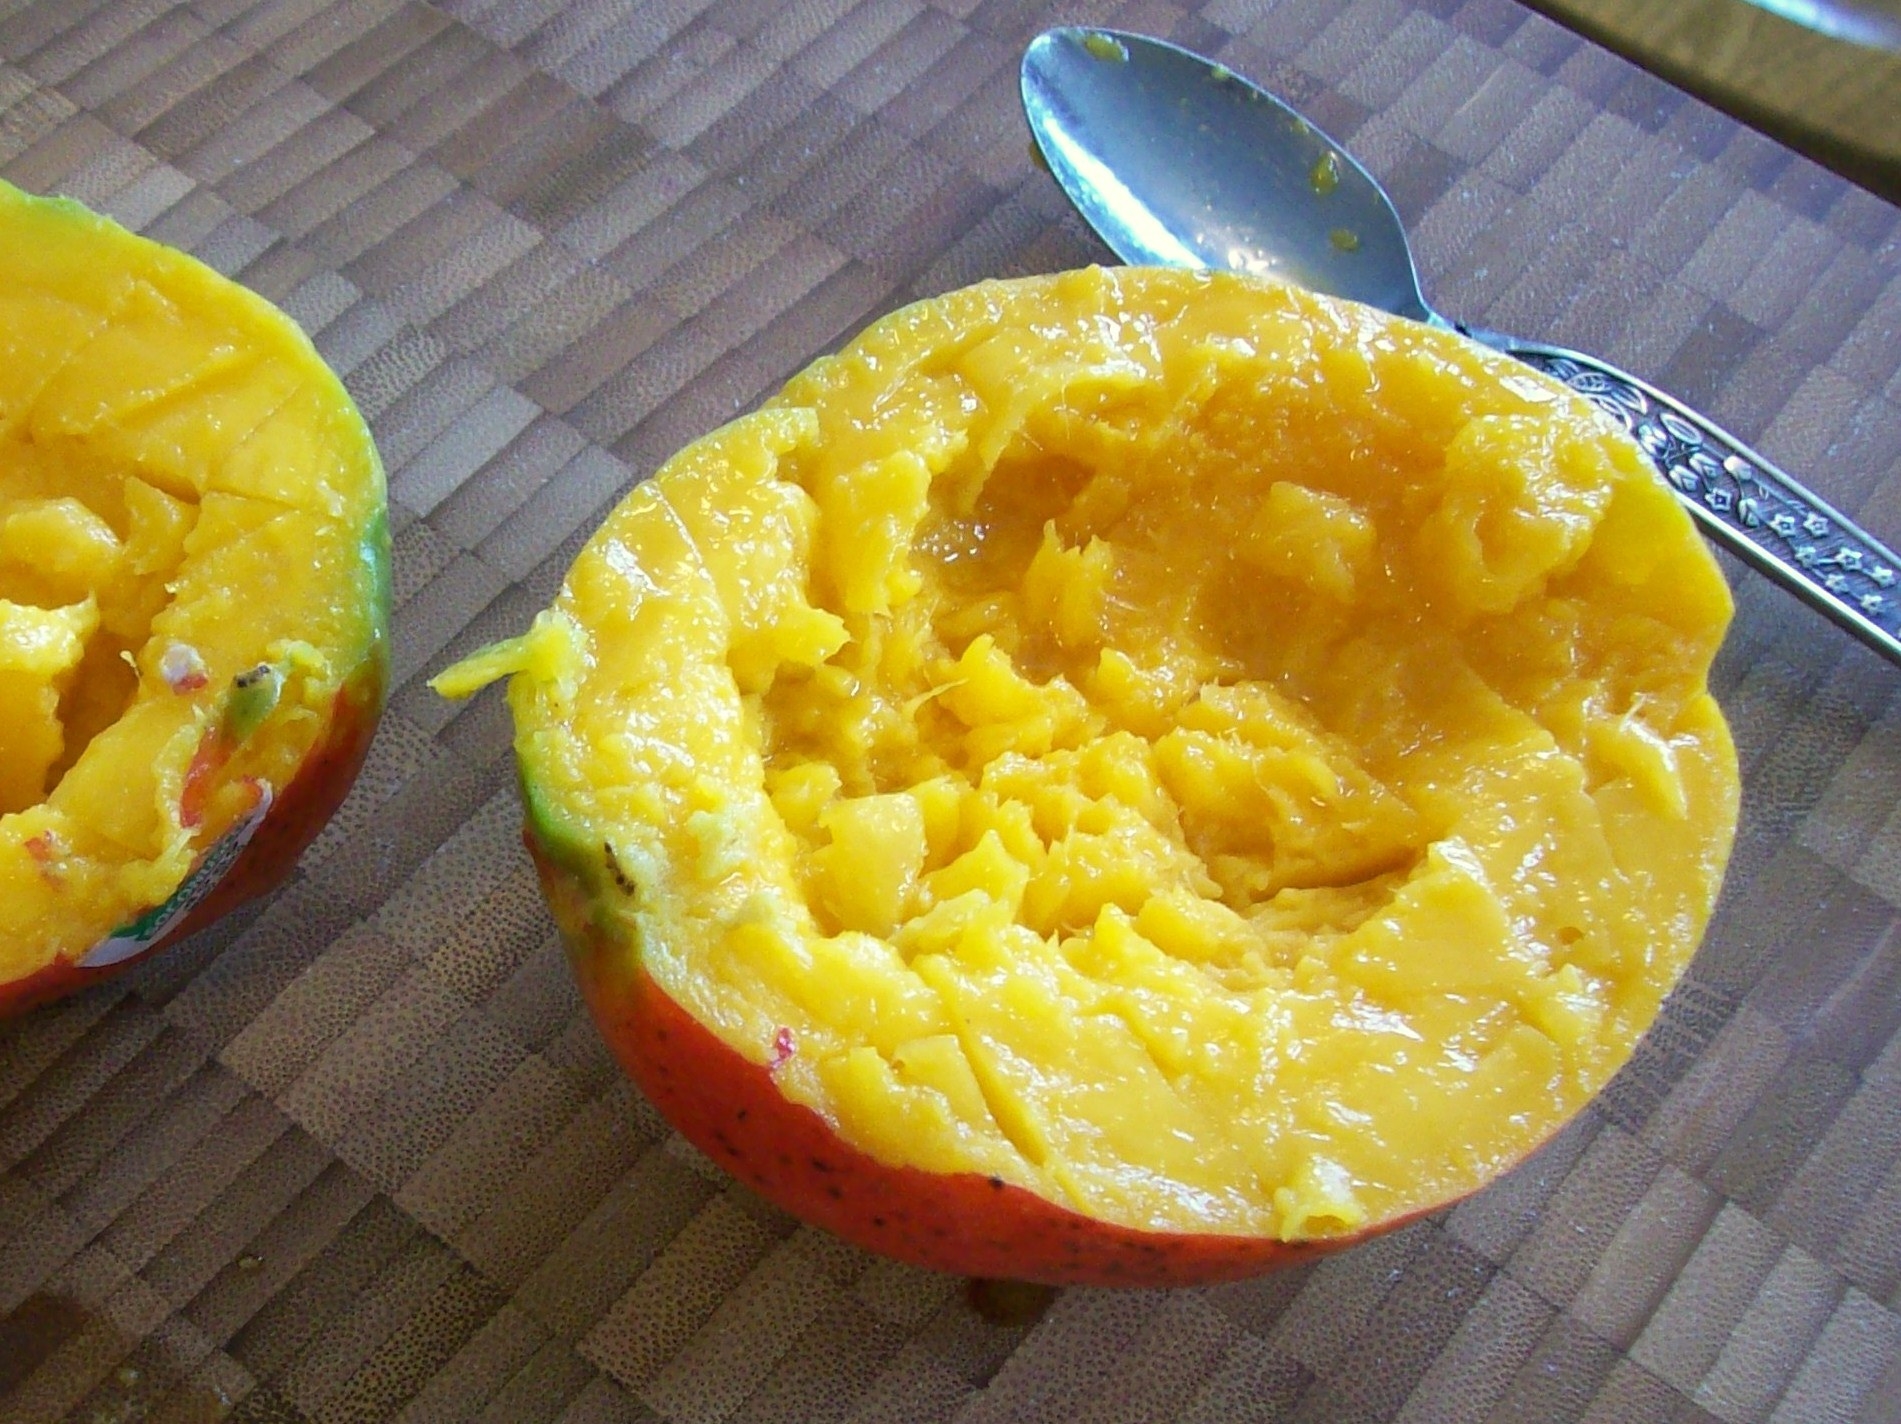 A half-sucked mango.